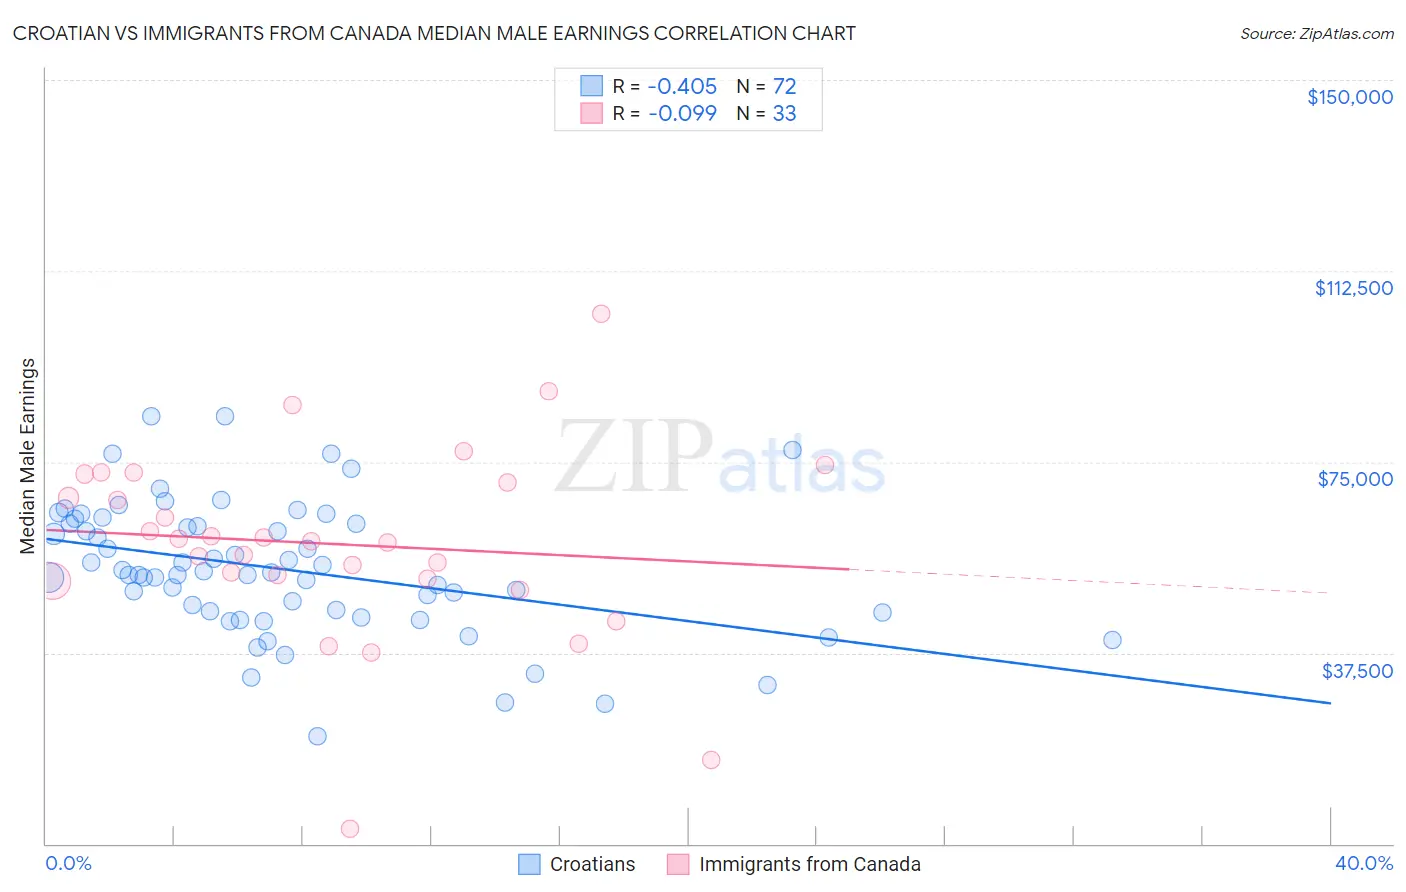 Croatian vs Immigrants from Canada Median Male Earnings